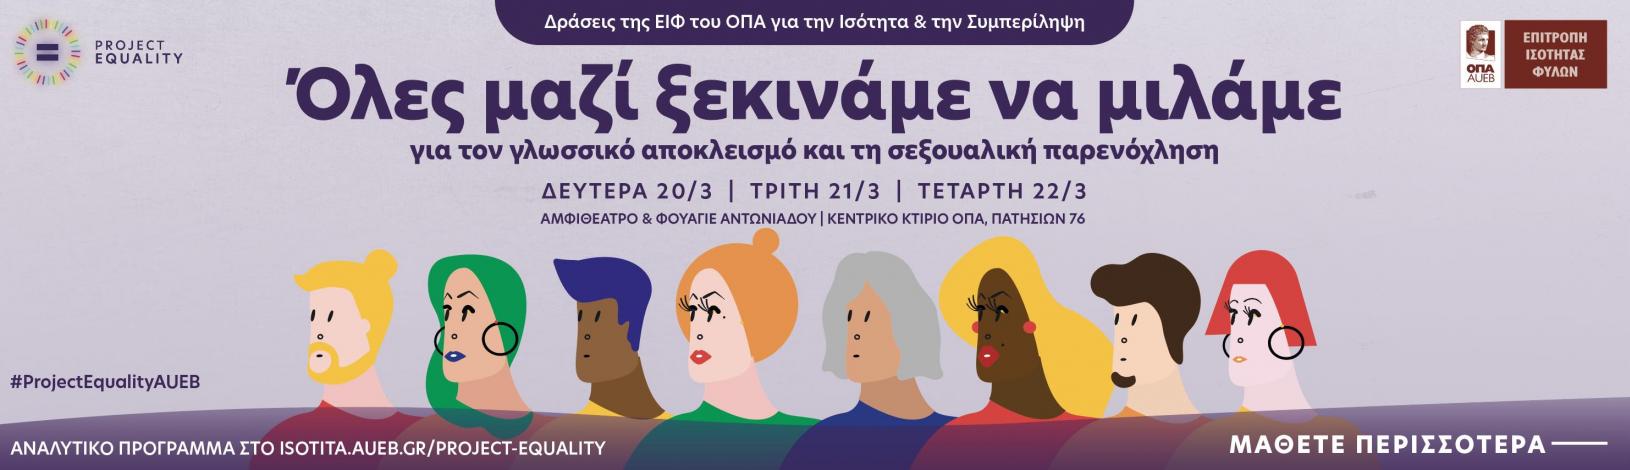 Τριήμερο δράσεων της Επιτροπής Ισότητας Φύλων του Οικονομικού Πανεπιστημίου Αθηνών